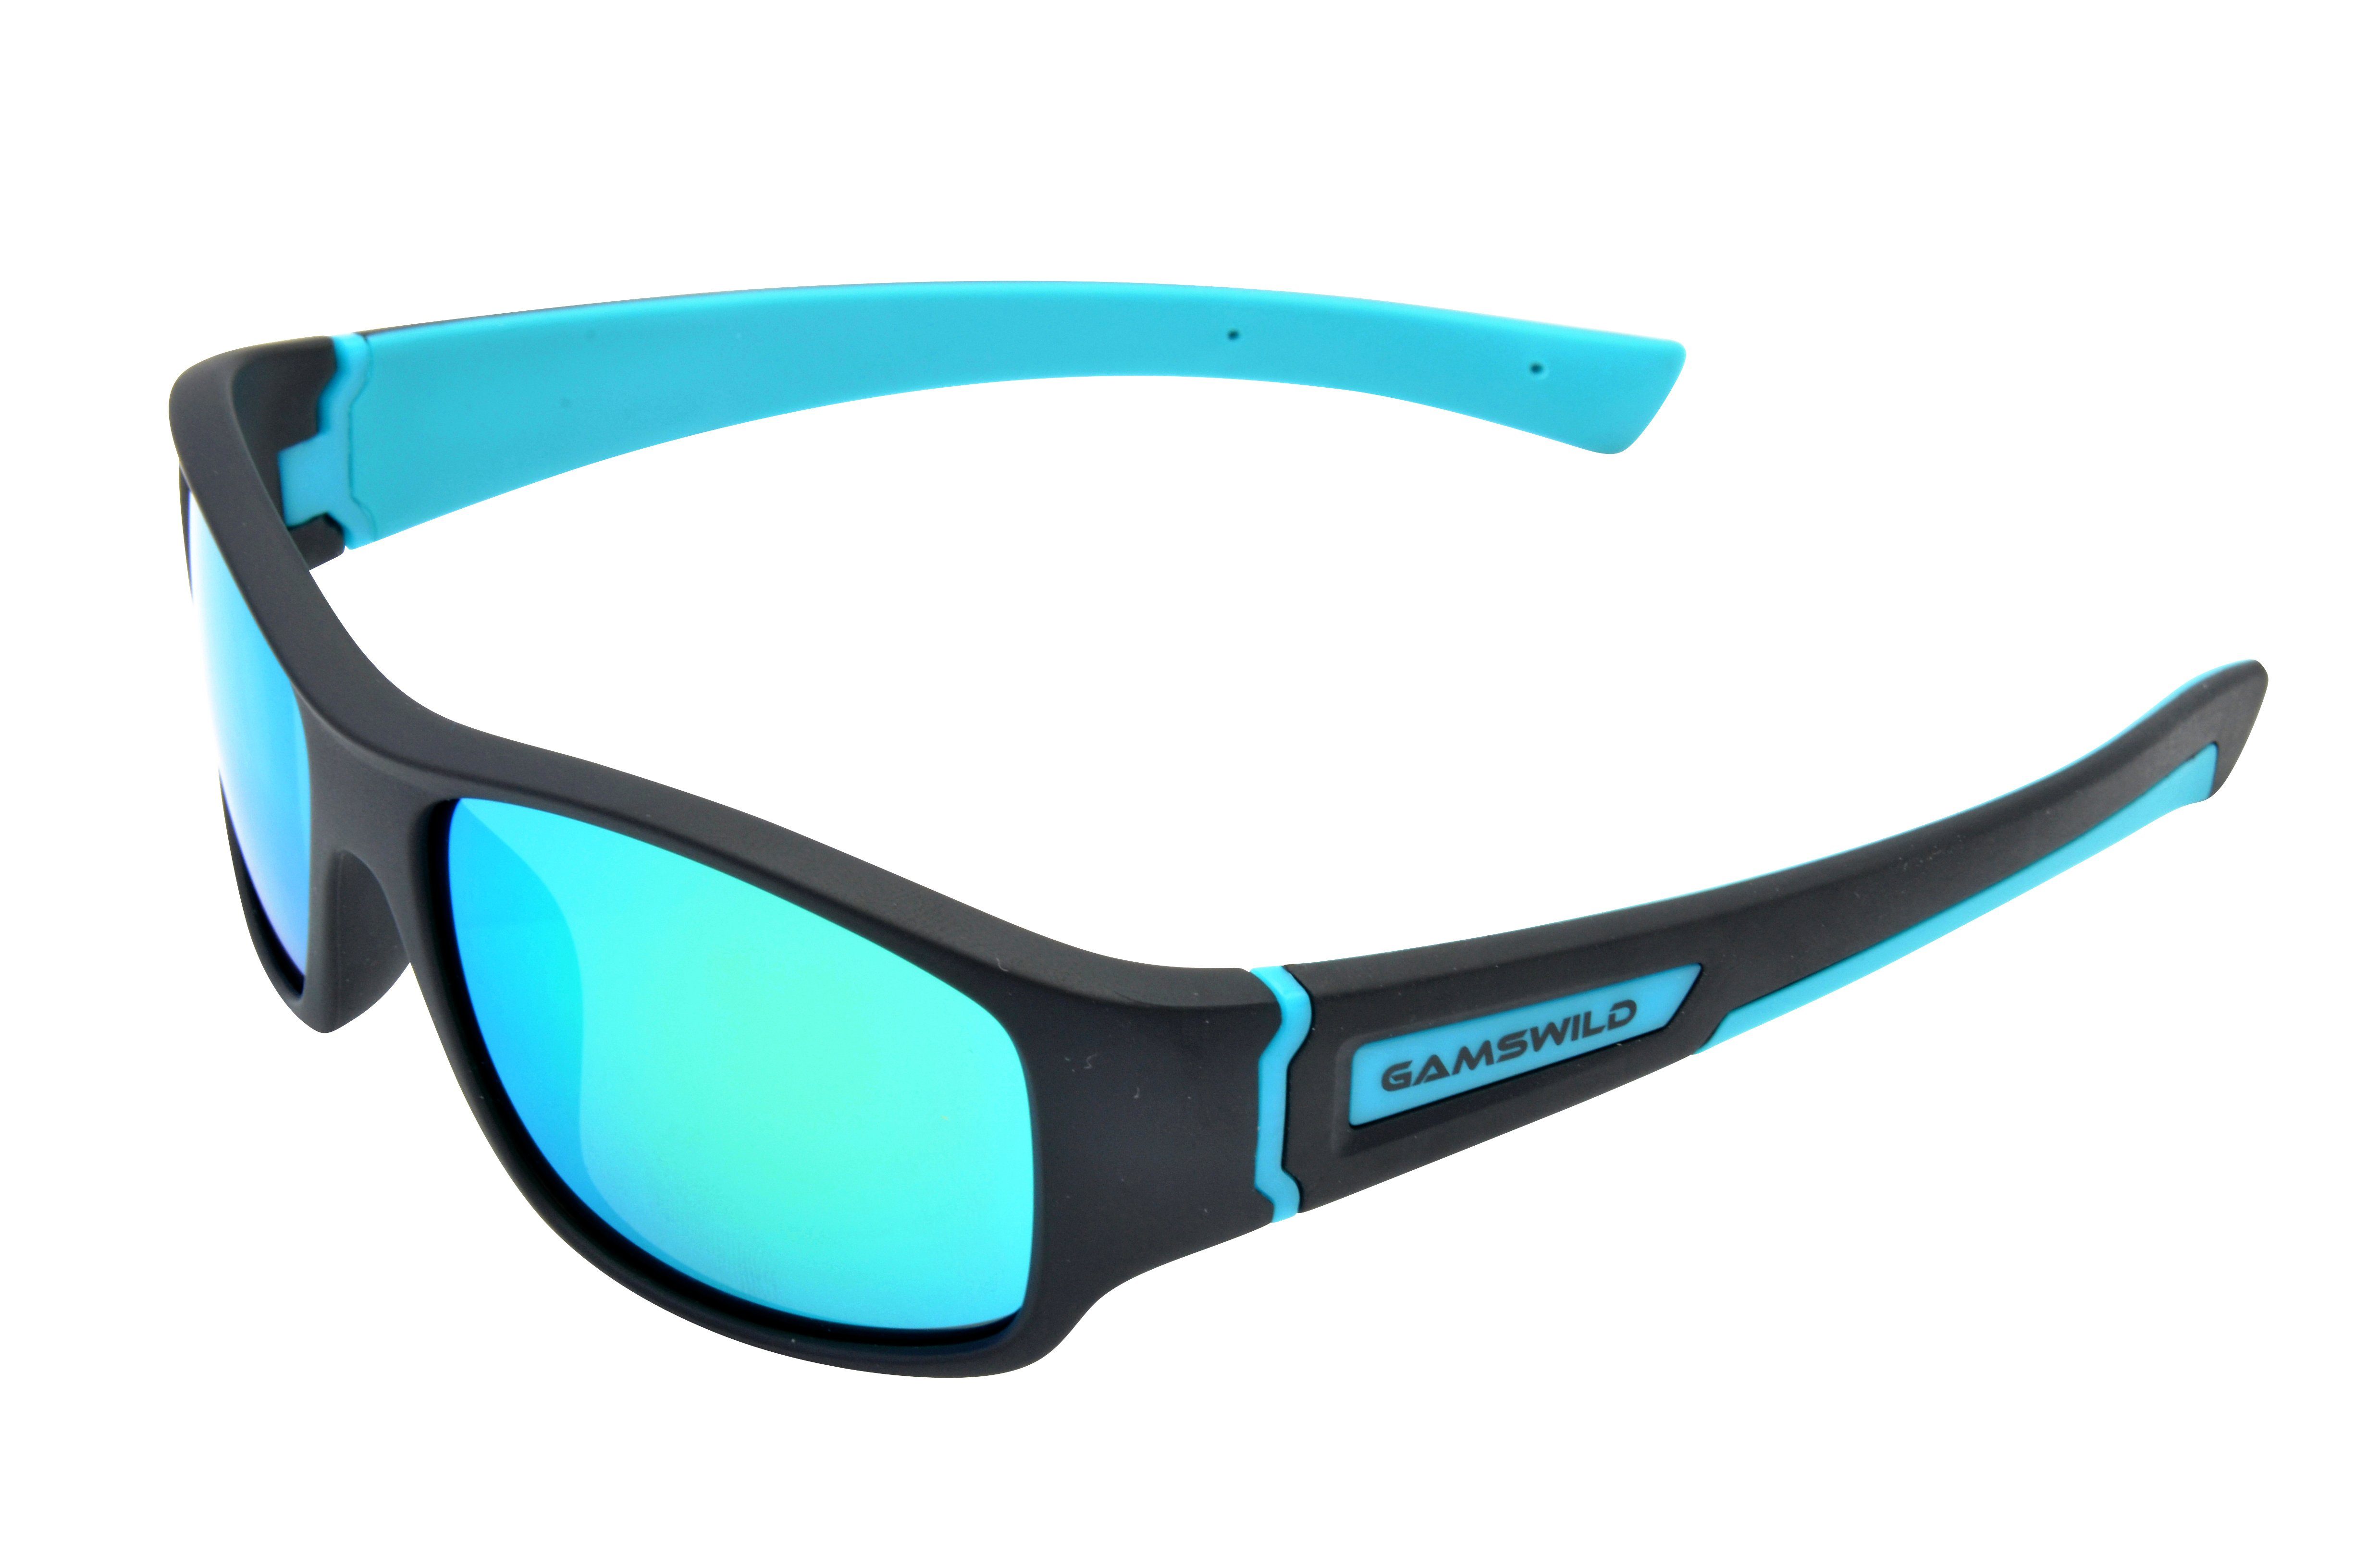 Gamswild Sonnenbrille »WJ5019 GAMSKIDS Jugendbrille 8-18 Jahre Kinderbrille  Mädchen Jungen kids Unisex, blau, rot, türkis« online kaufen | OTTO